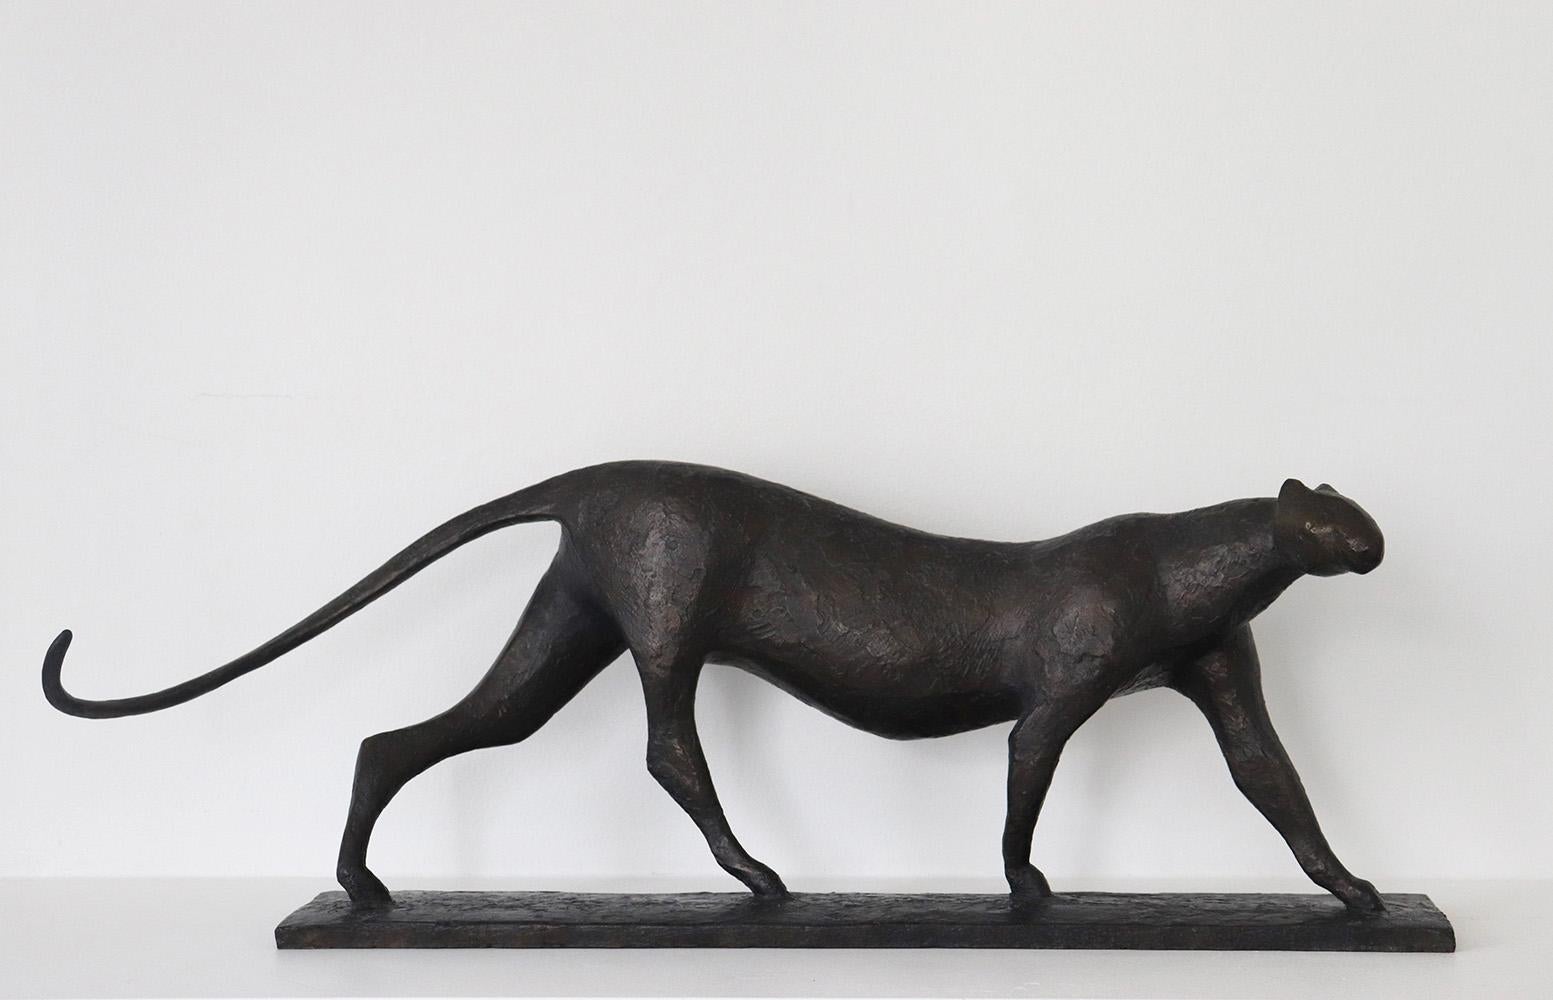 Feline VI ist eine Bronzeskulptur des französischen zeitgenössischen Künstlers Pierre Yermia, die eine schreitende Raubkatze (Leopard, Jaguar oder Gepard) darstellt. Die dunkle Patina mit blauen Schattierungen unterstreicht die geheimnisvolle